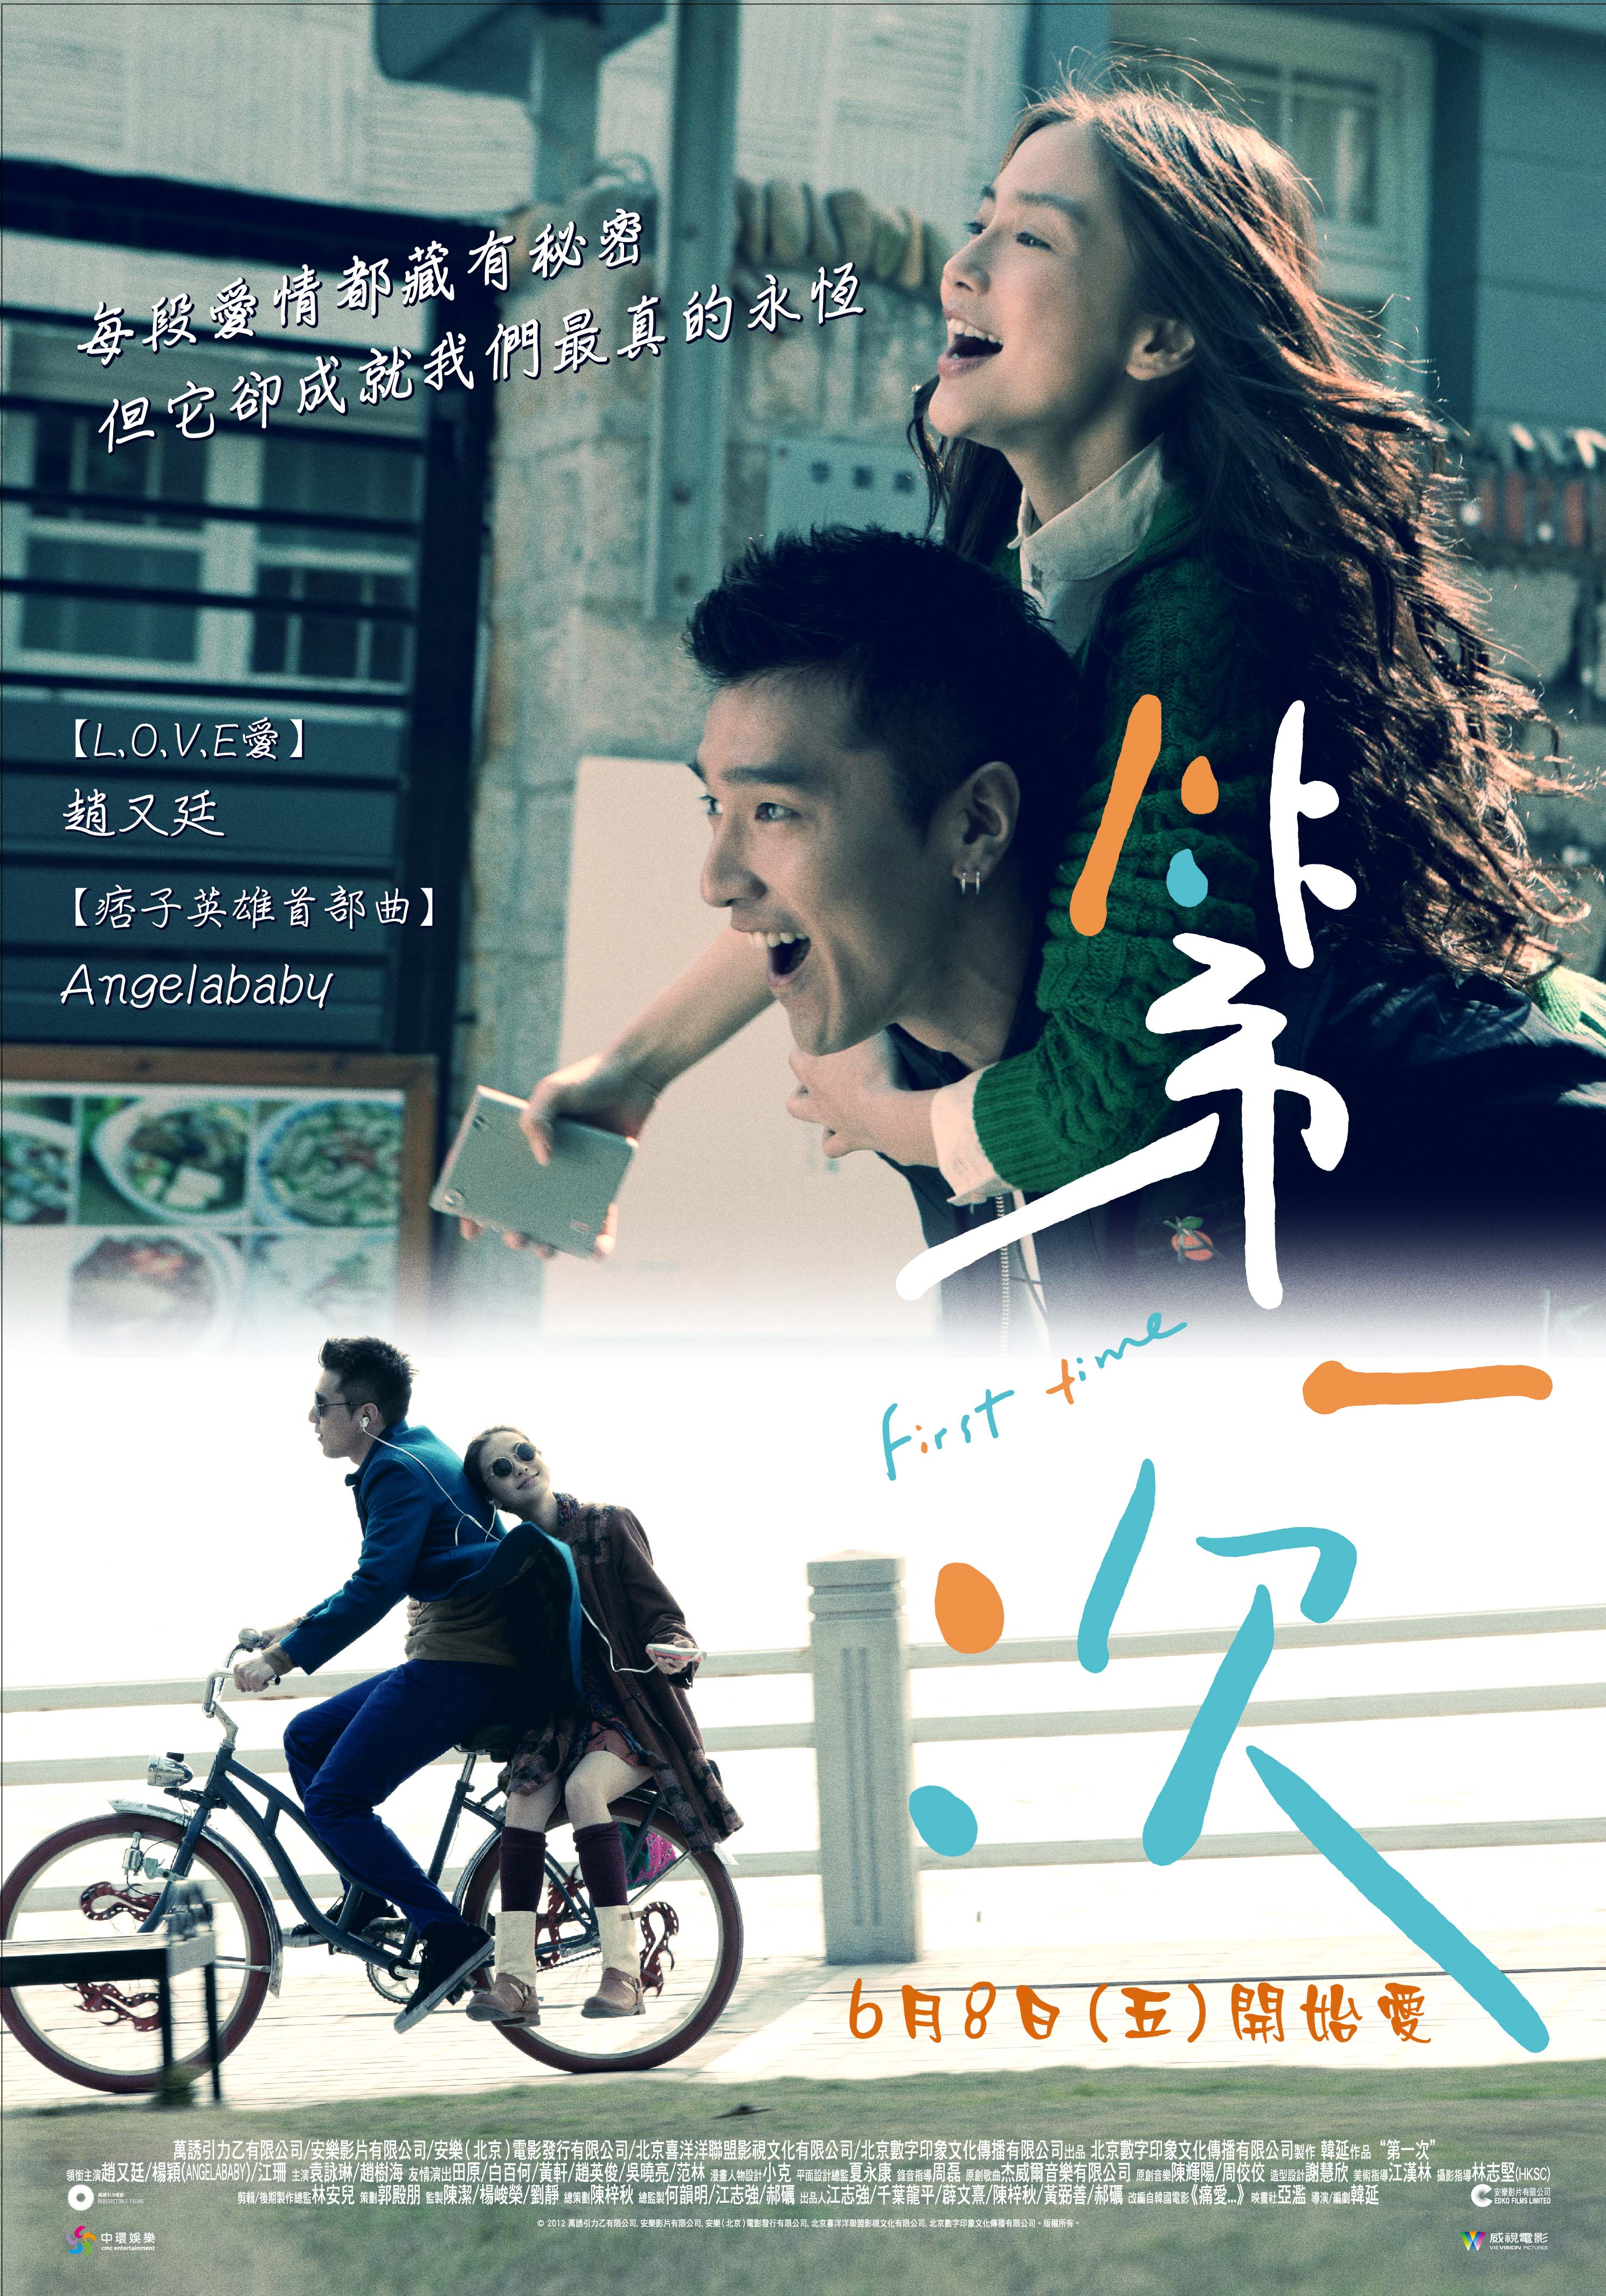 Di yi ci (2012) with English Subtitles on DVD on DVD